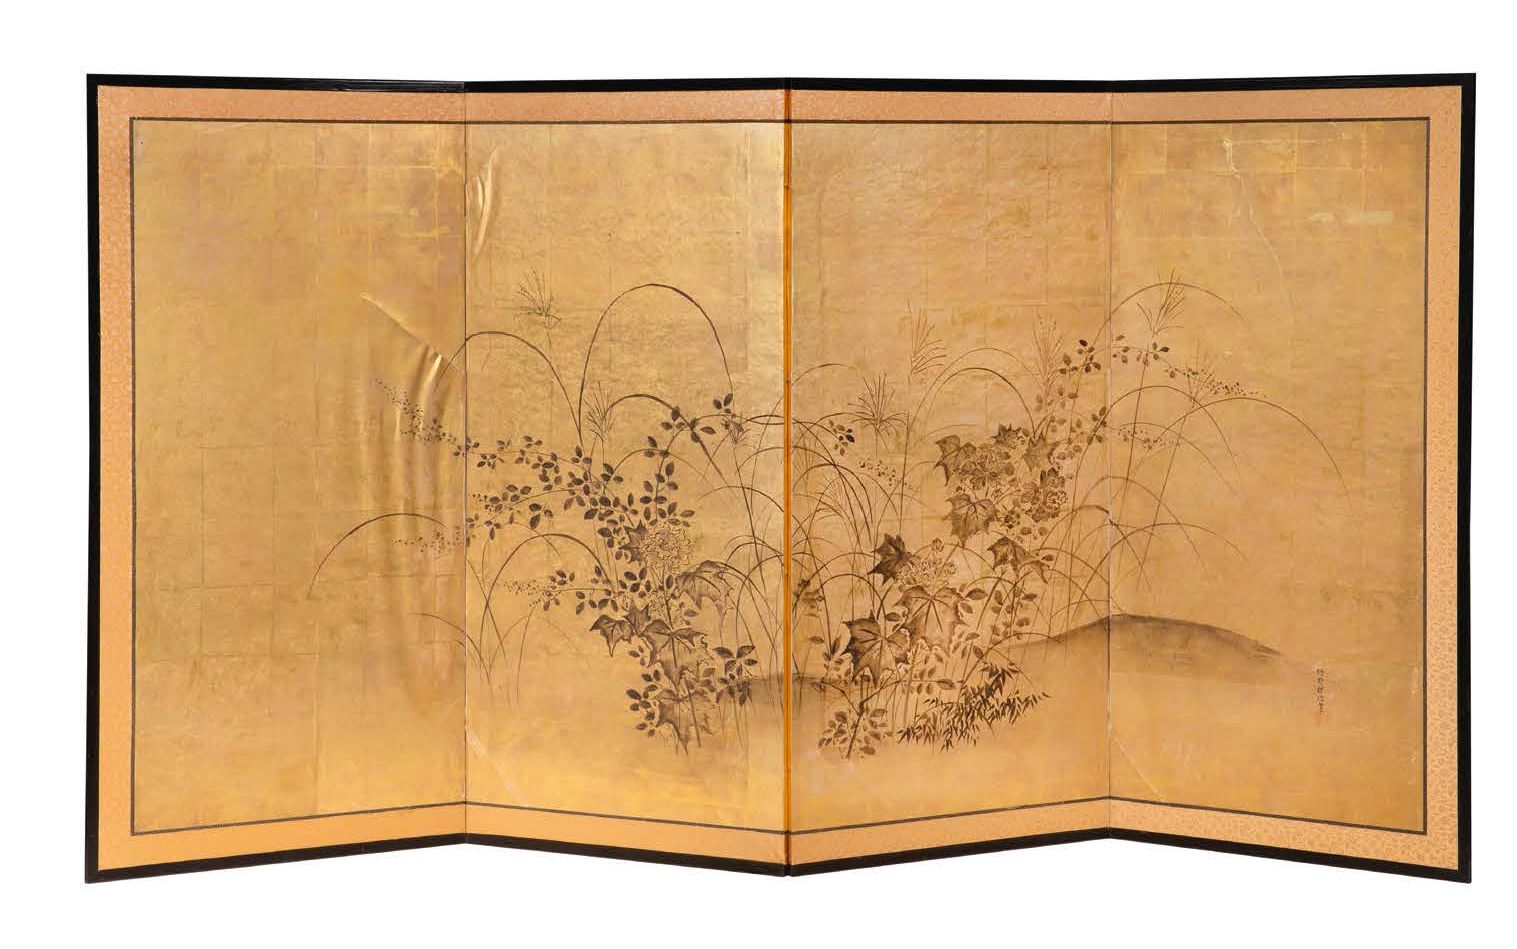 JAPON XIXE SIECLE 在金色背景上用水墨和浅色画的四叶屏风，上面有秋天的植物。有天书签名 Kanô
Tanshin.
Dim. 124,4 x 2&hellip;